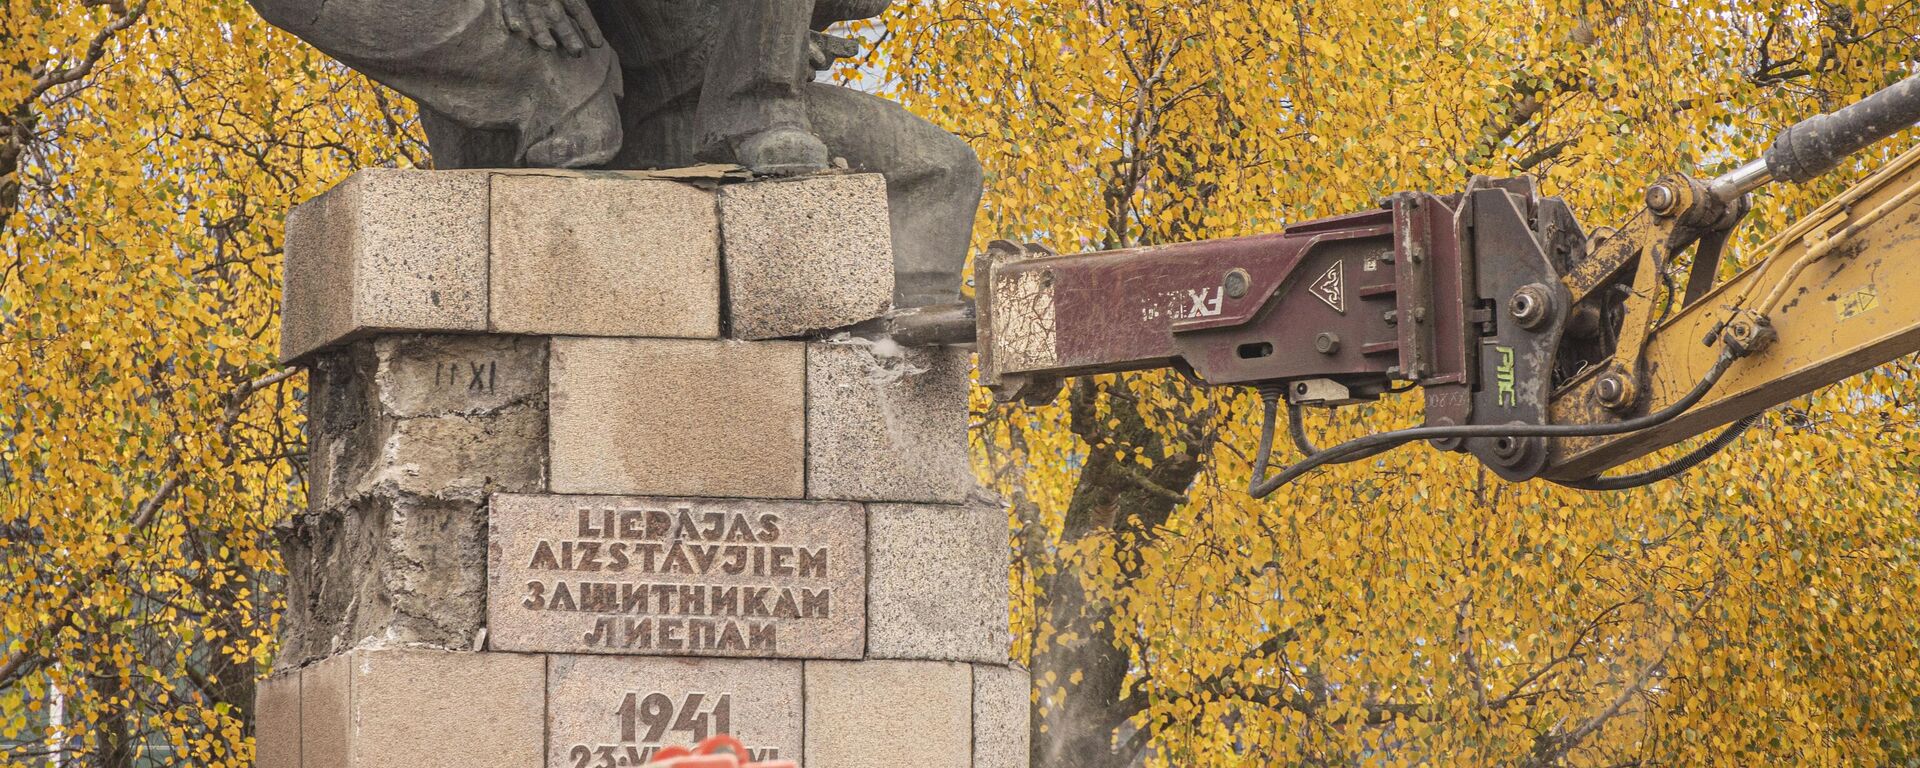 Снос памятника защитникам Лиепаи, 25 октября 2022 года  - Sputnik Латвия, 1920, 16.11.2022